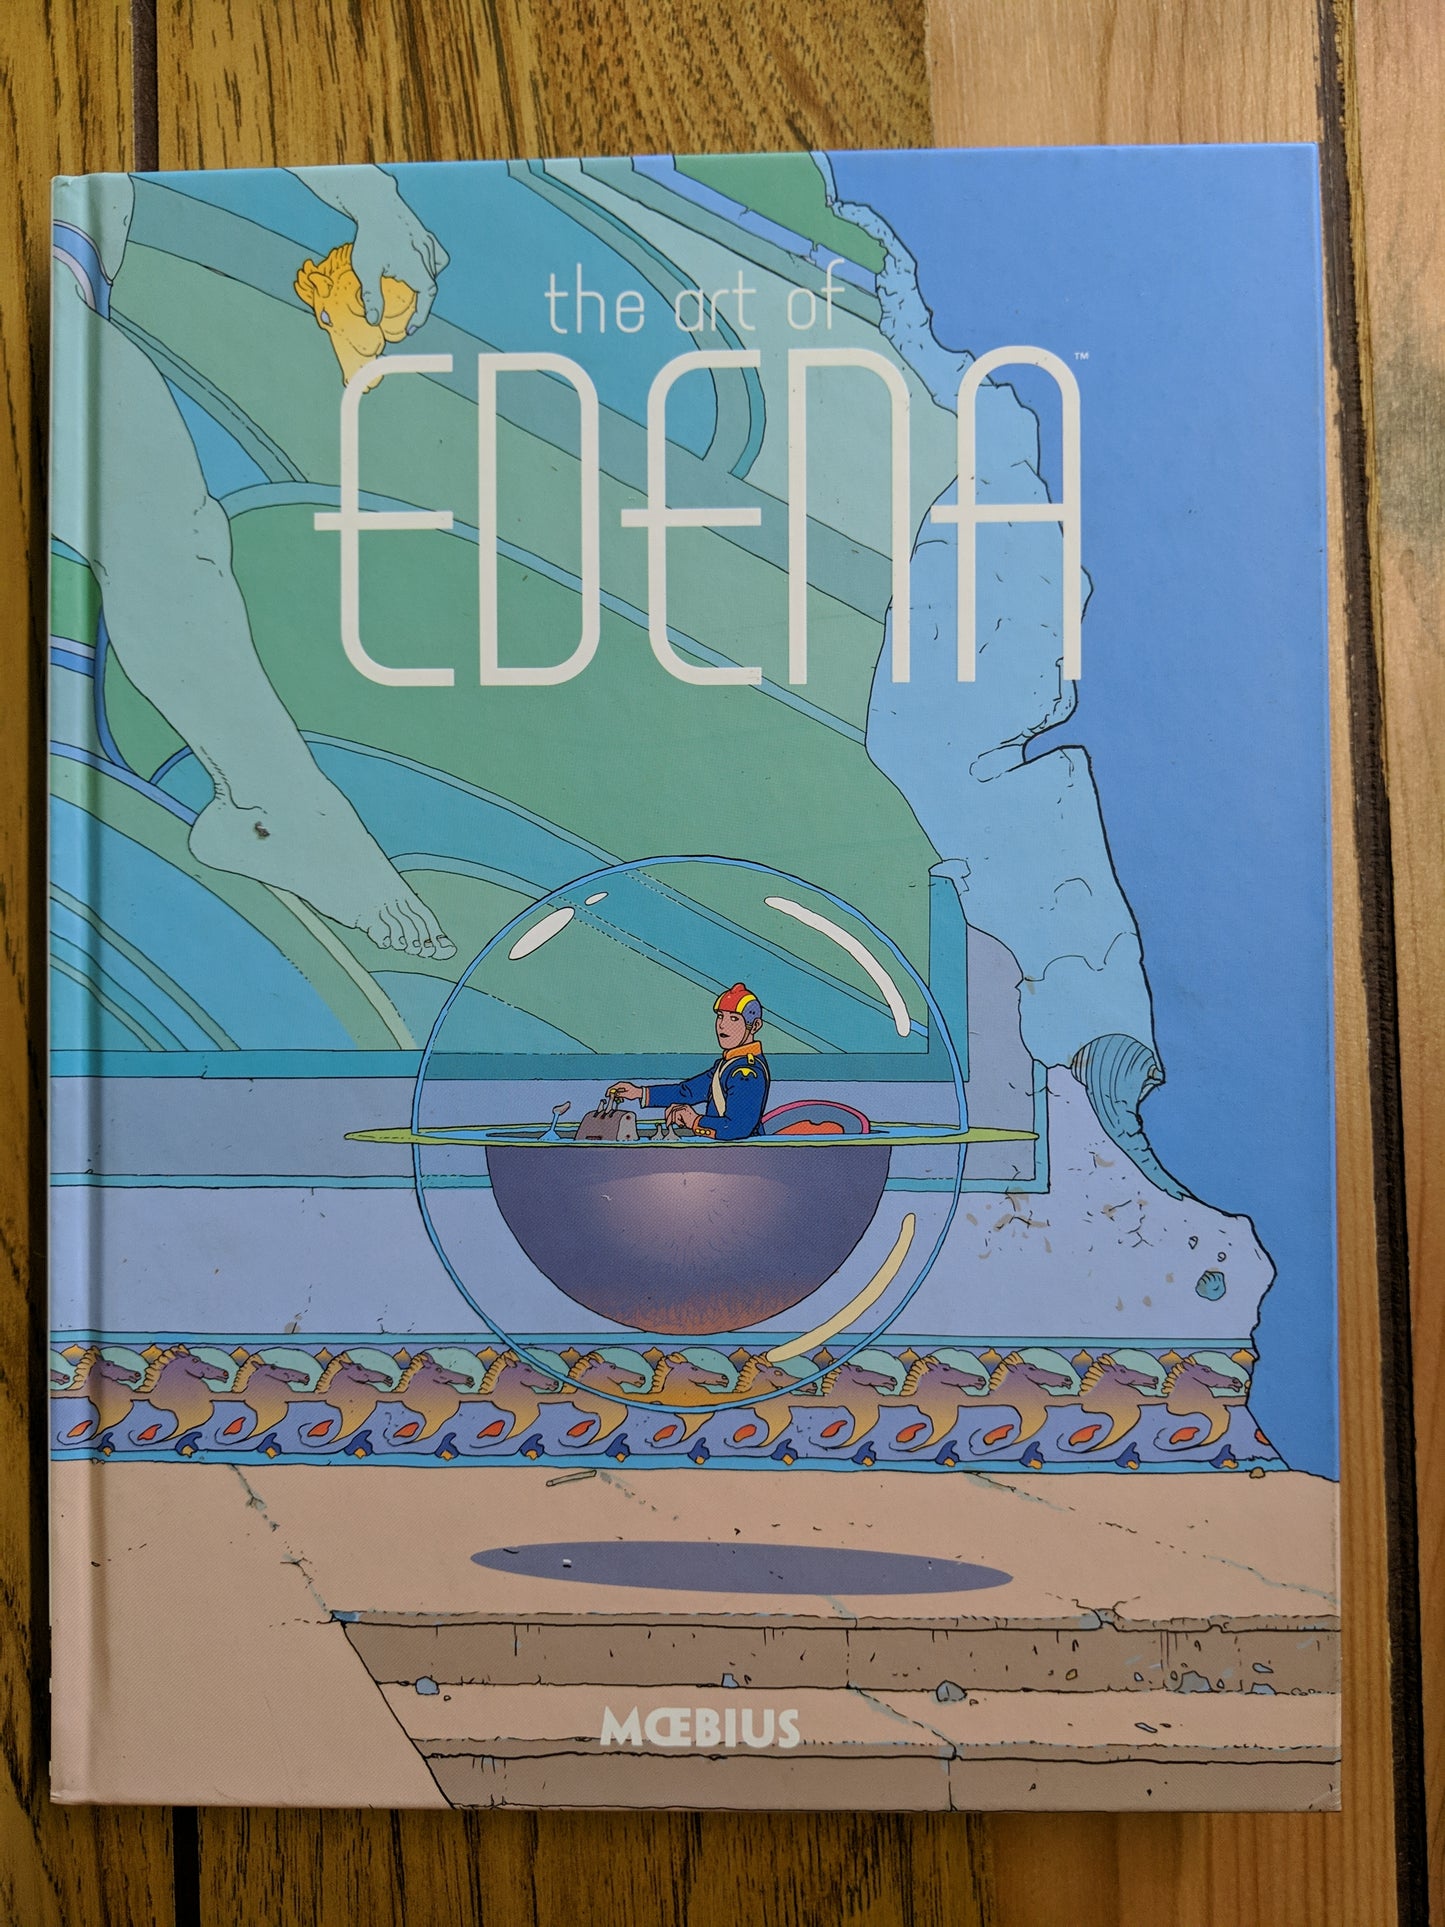 The Art of Edena